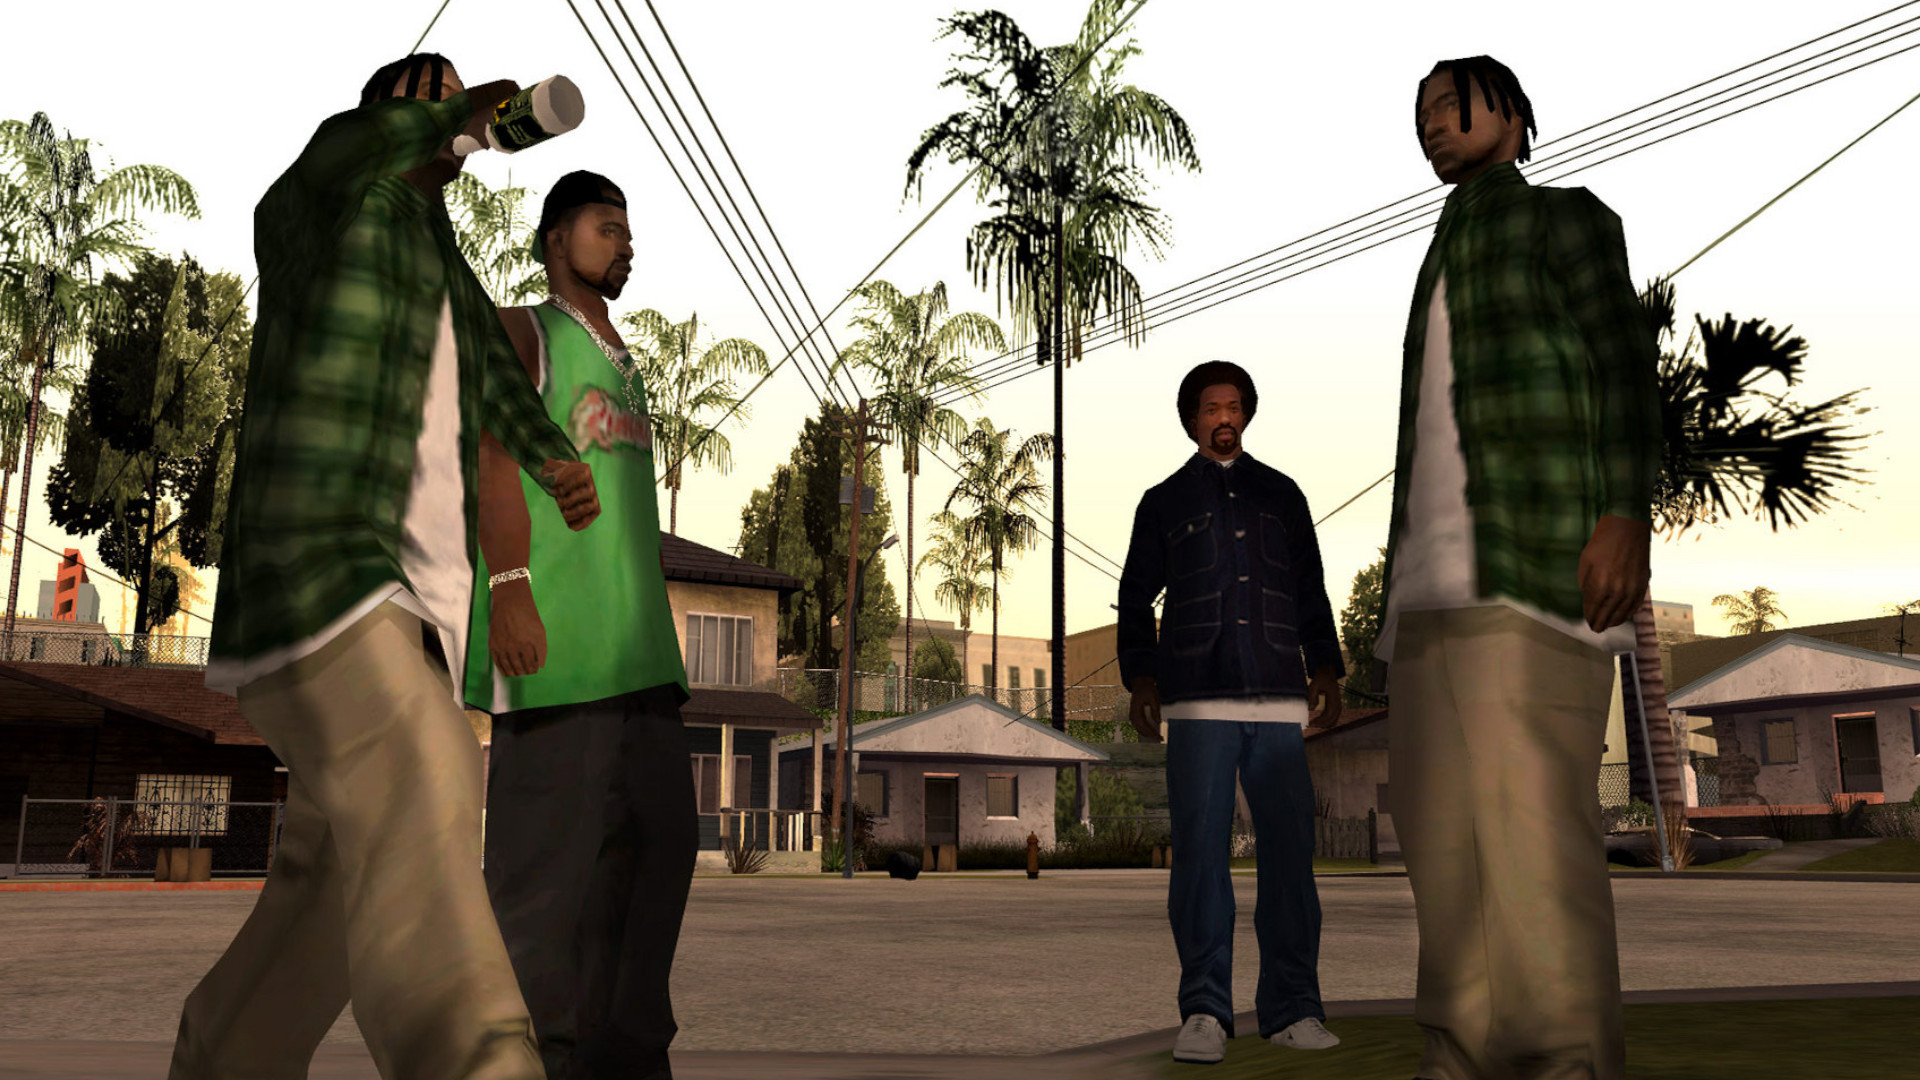 Reference to GTA 3 - GTA SA / Grand Theft Auto: San Andreas - on